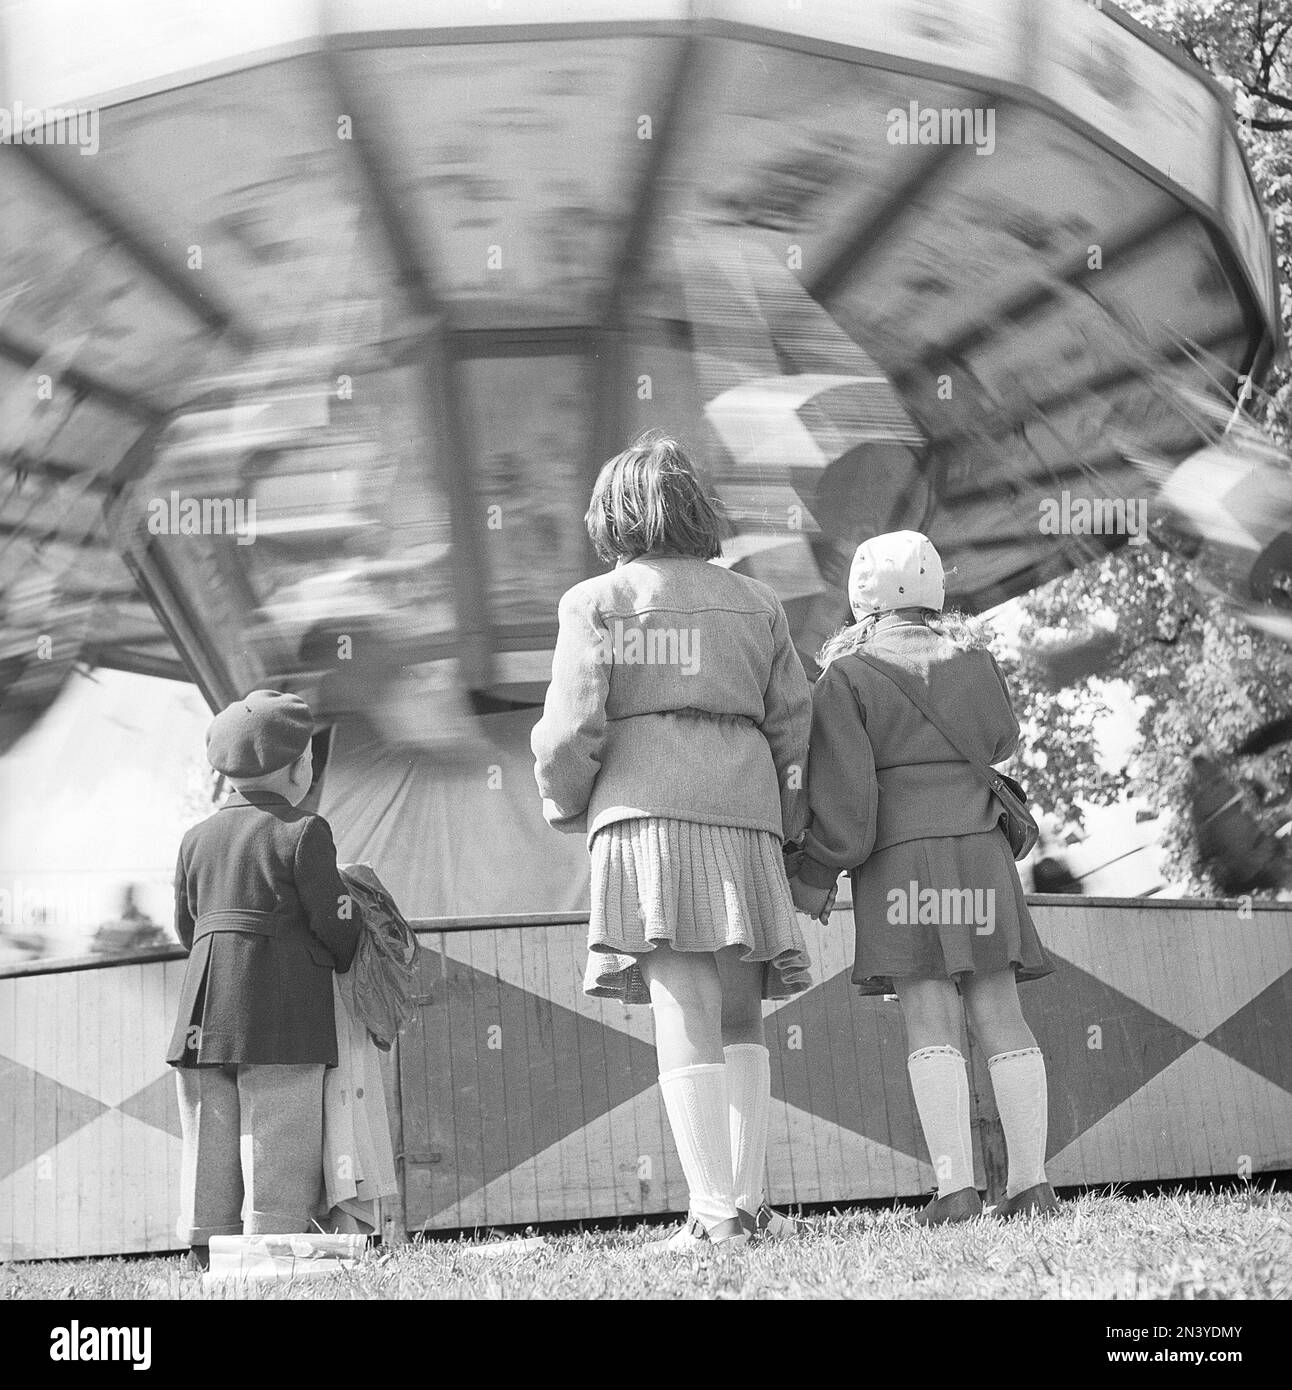 Parco divertimenti nel 1940s. I bambini di fronte a una giostra che gira sembrano affascinati dalla commovente attrazione. Svezia 1948 Kristoffersson Ref AR44-3 Foto Stock